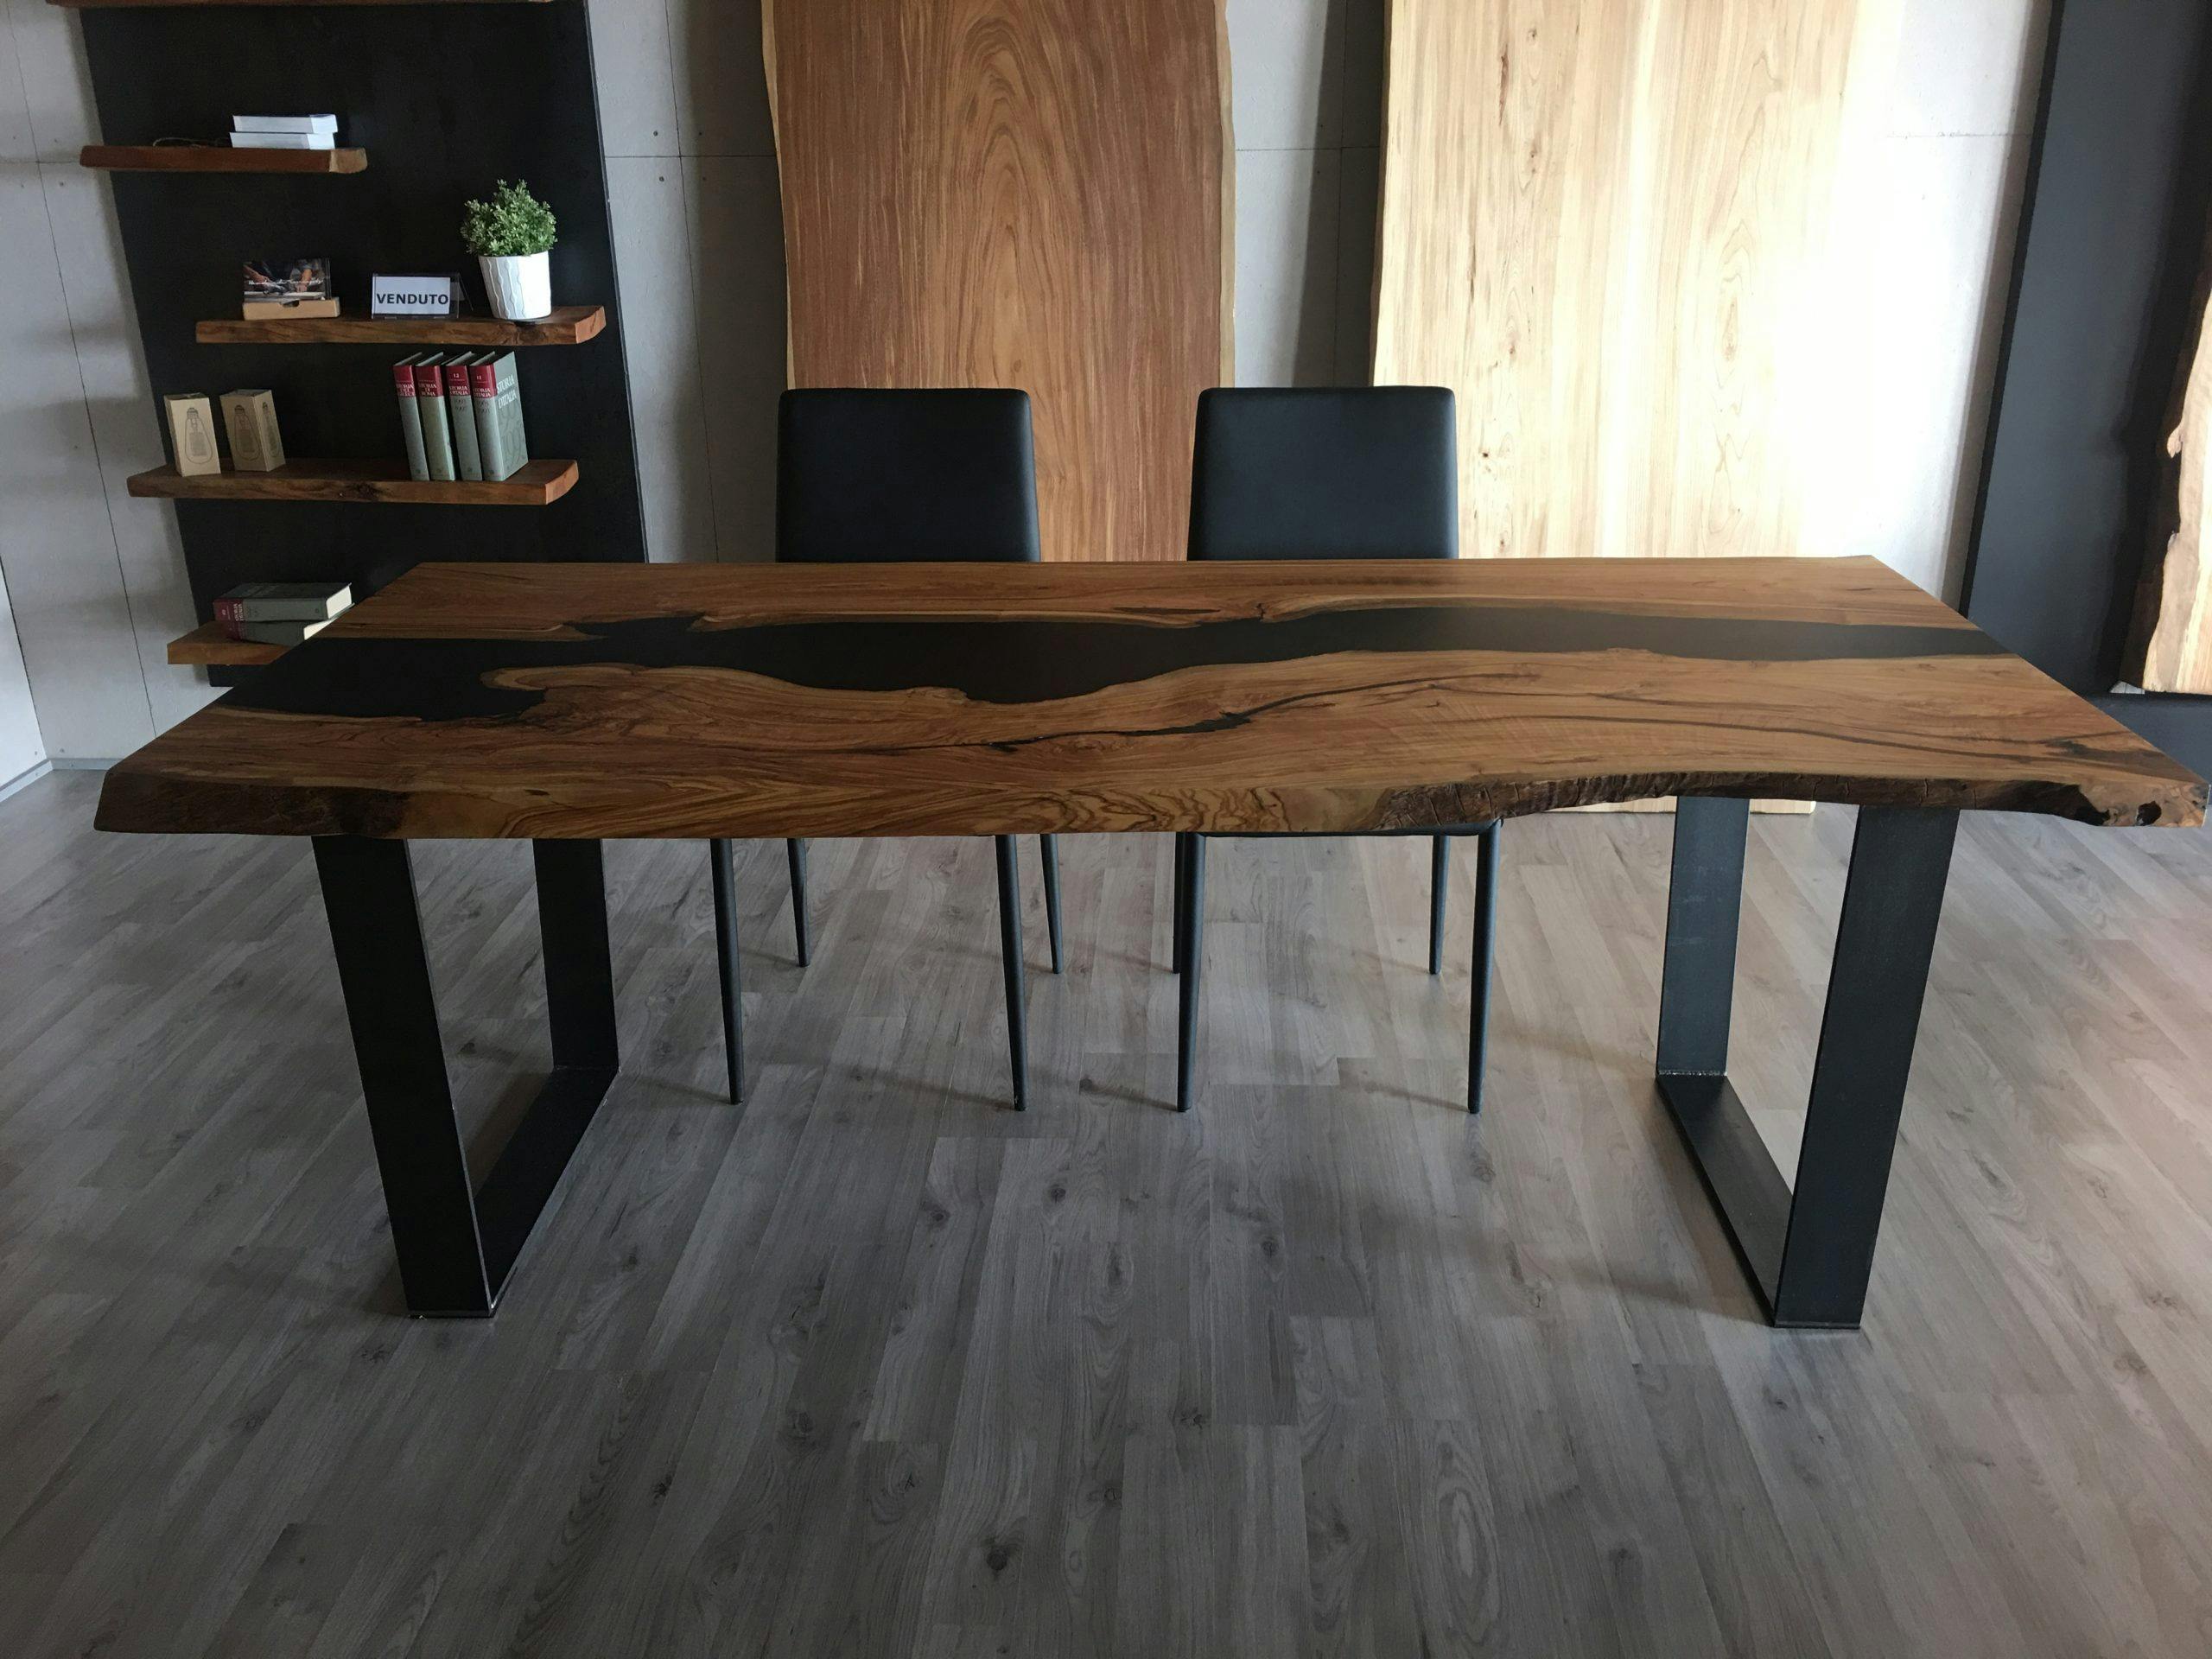 La scelta del basamento per i tavoli in legno massello